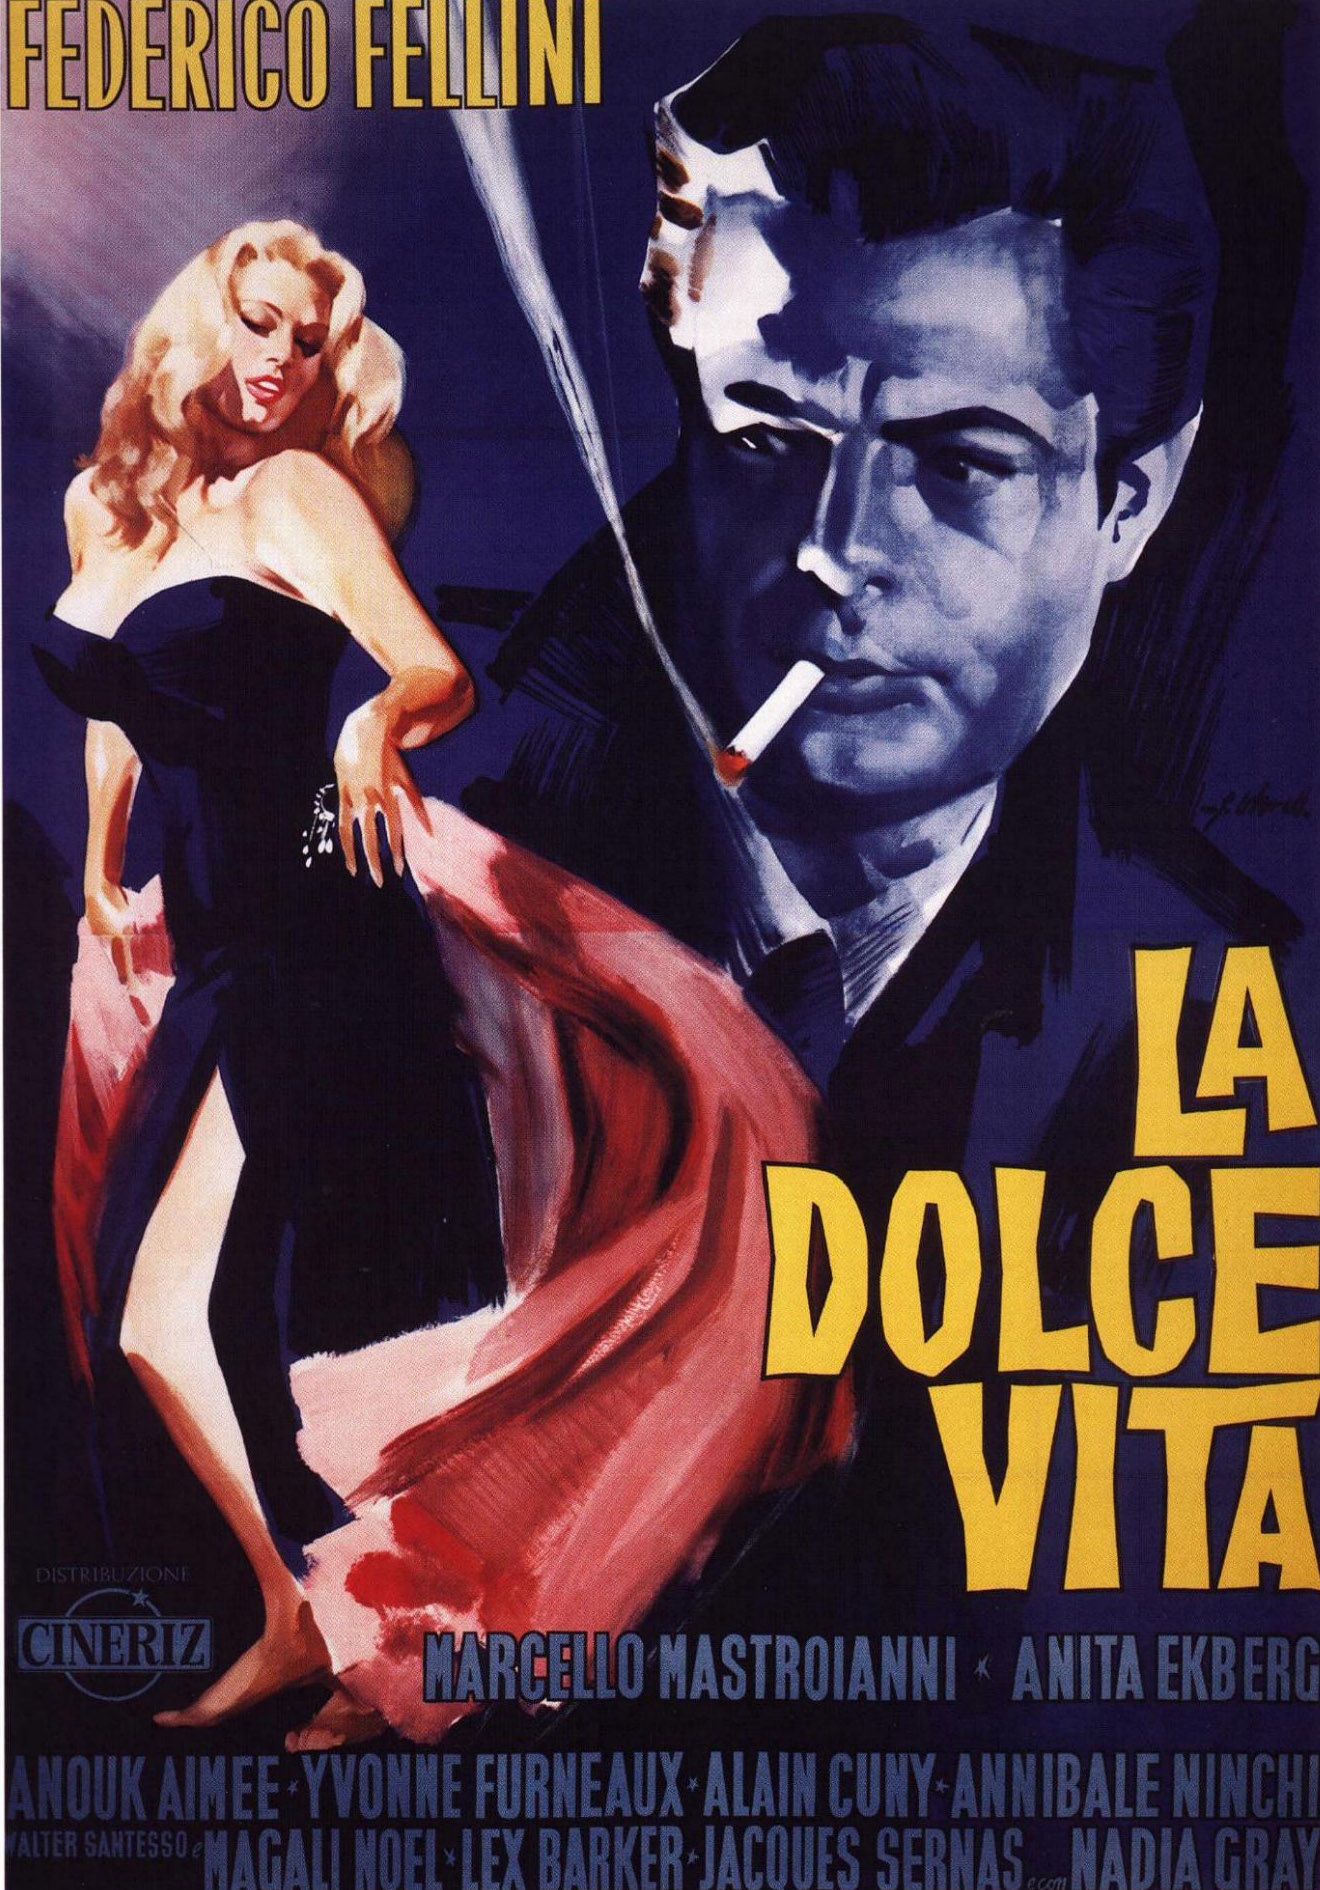 Remembering Marcello Mastroianni NEW DVD documentary fellini la dolce vita 8 1/2 